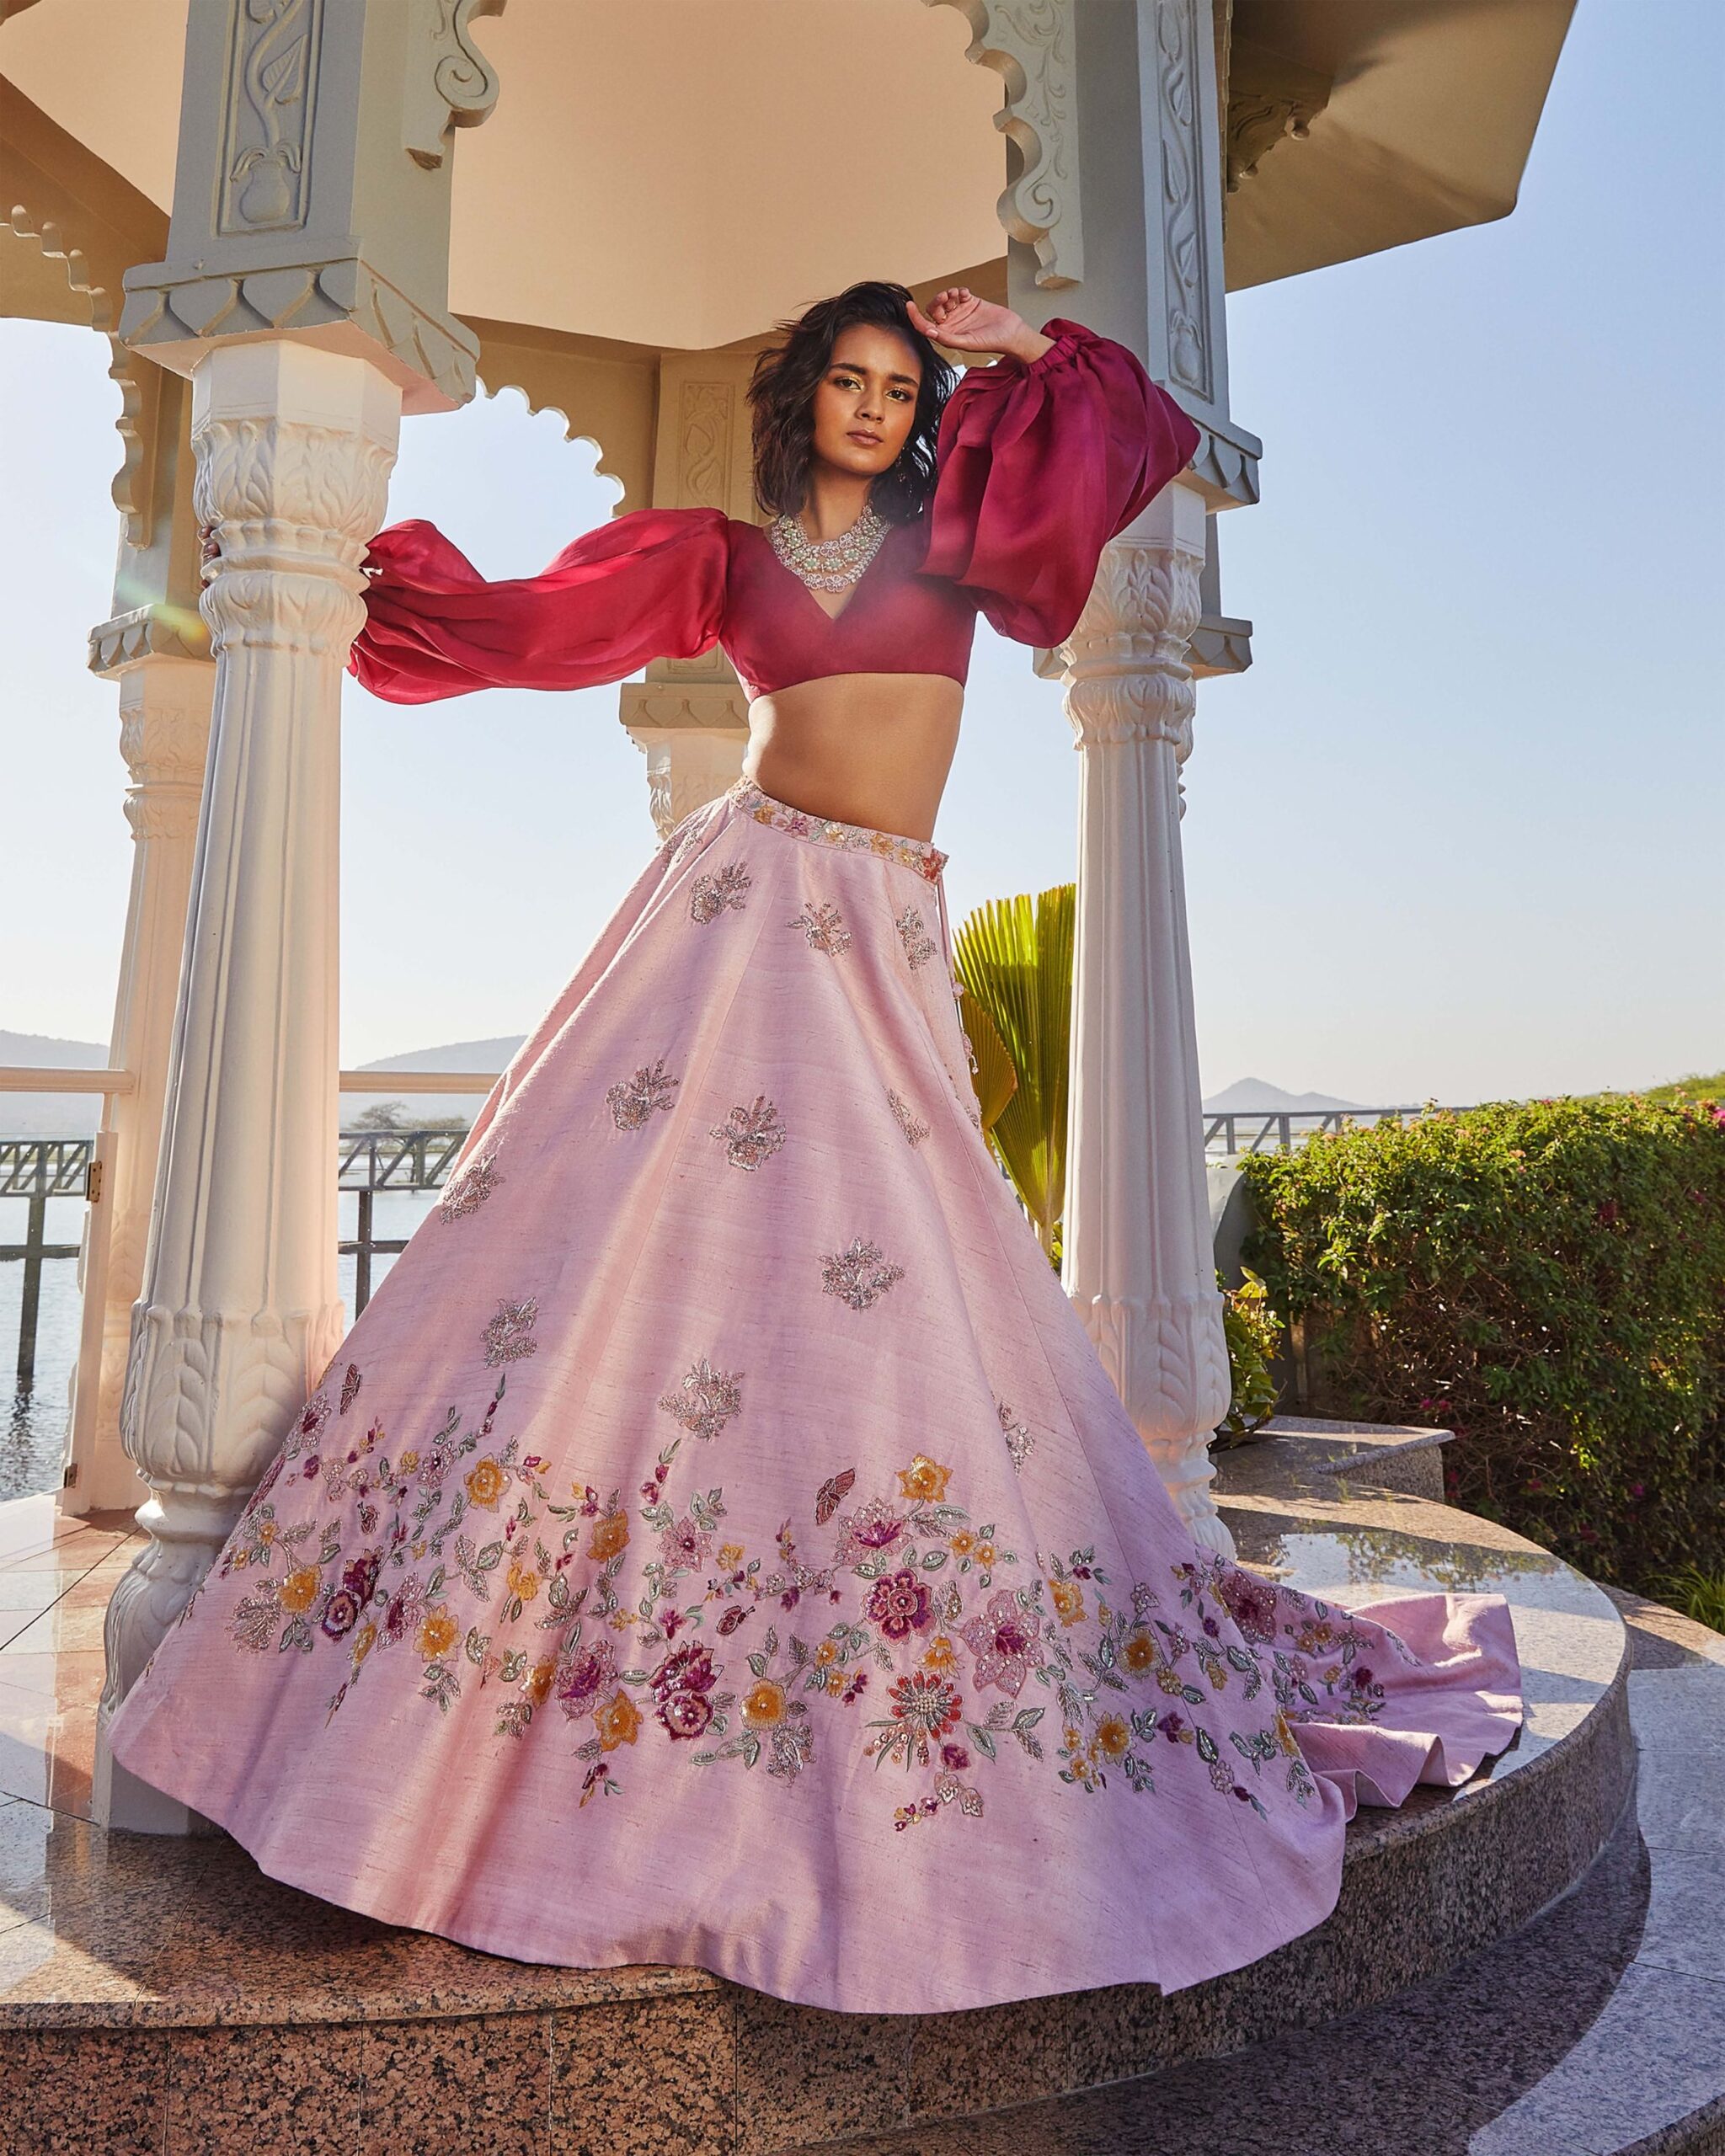 Summer dreams by shyamal bhumika -pink bridal lehanga